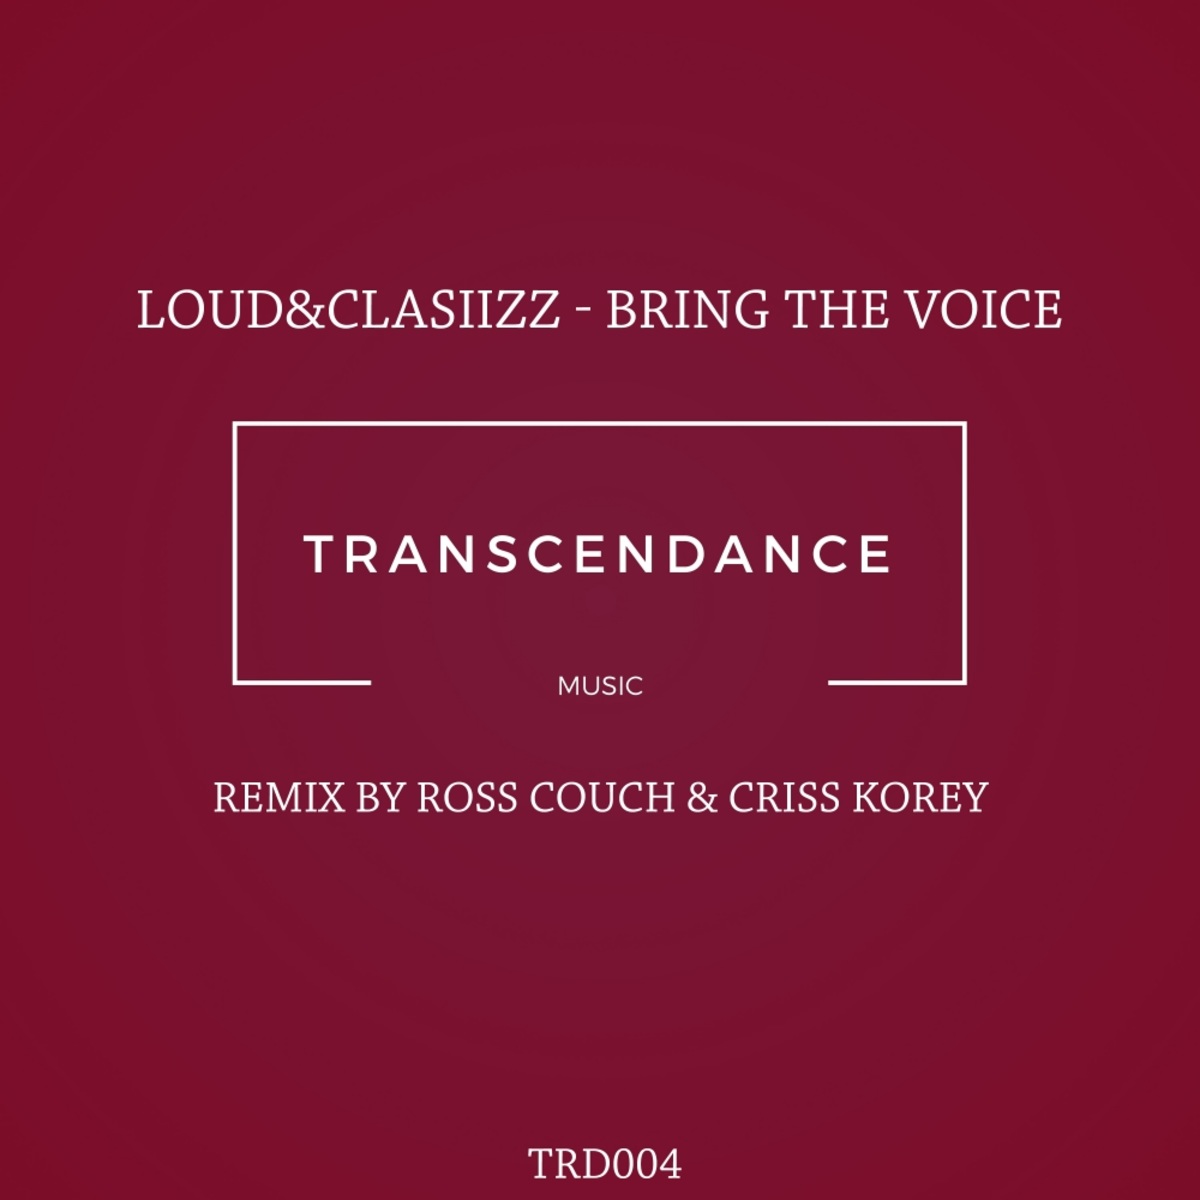 Loud&Clasiizz - Bring The Voice / Transcendance Music